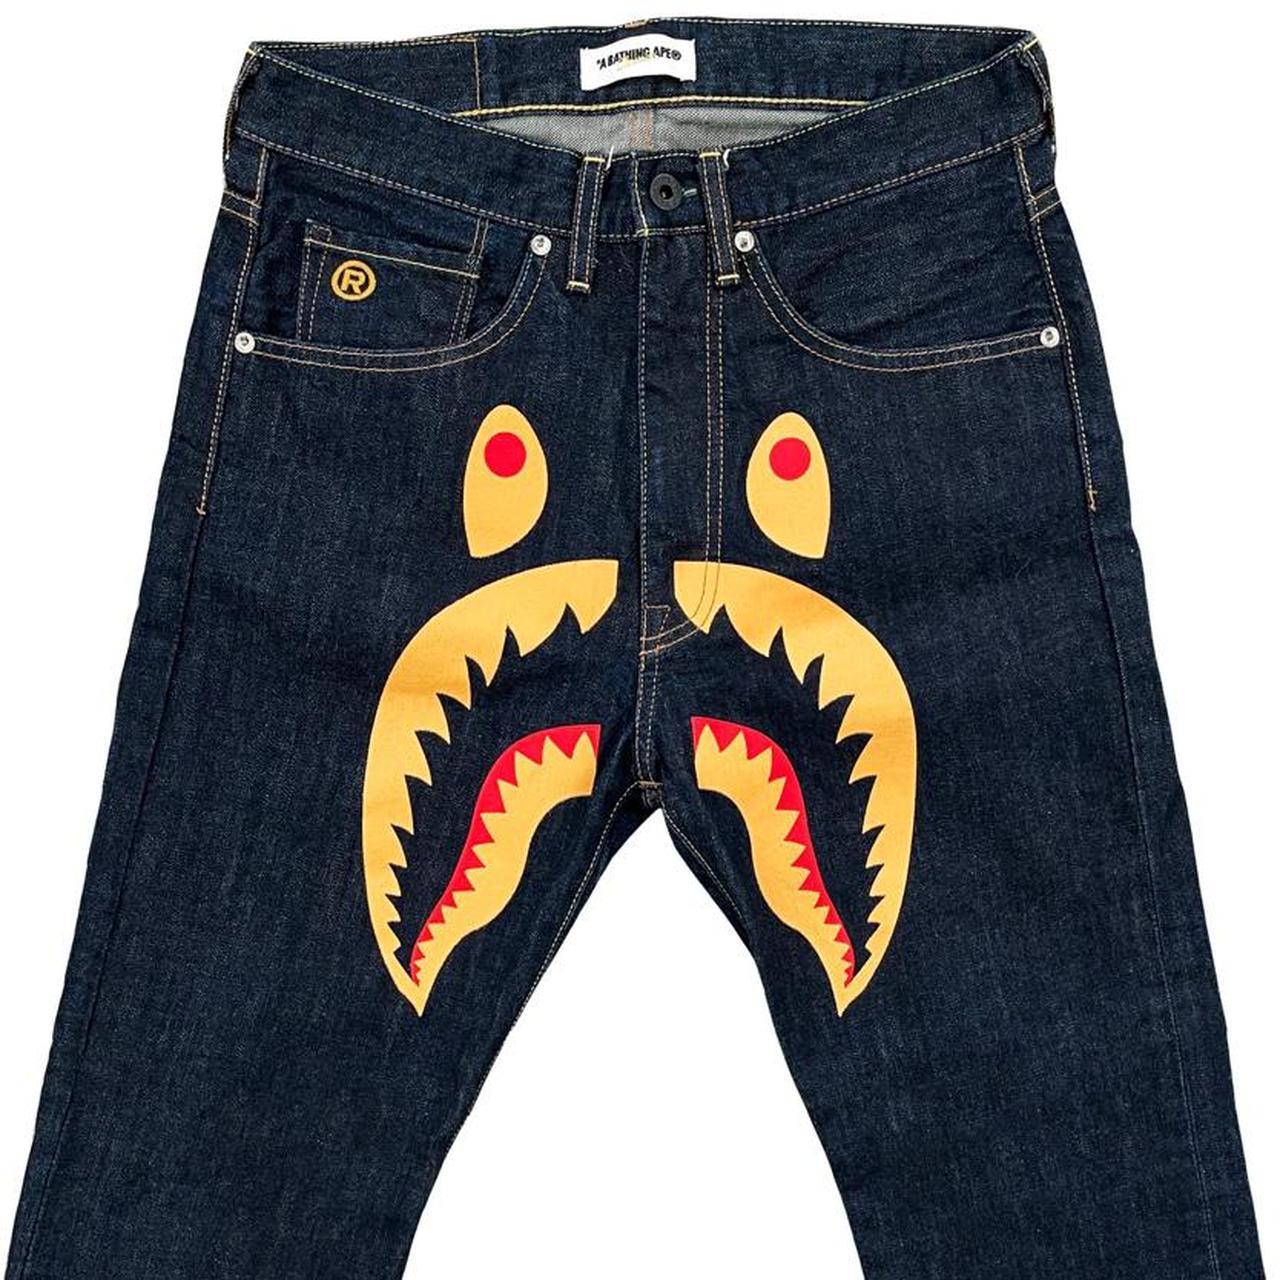 Bape WGM Shark Jeans - Known Source